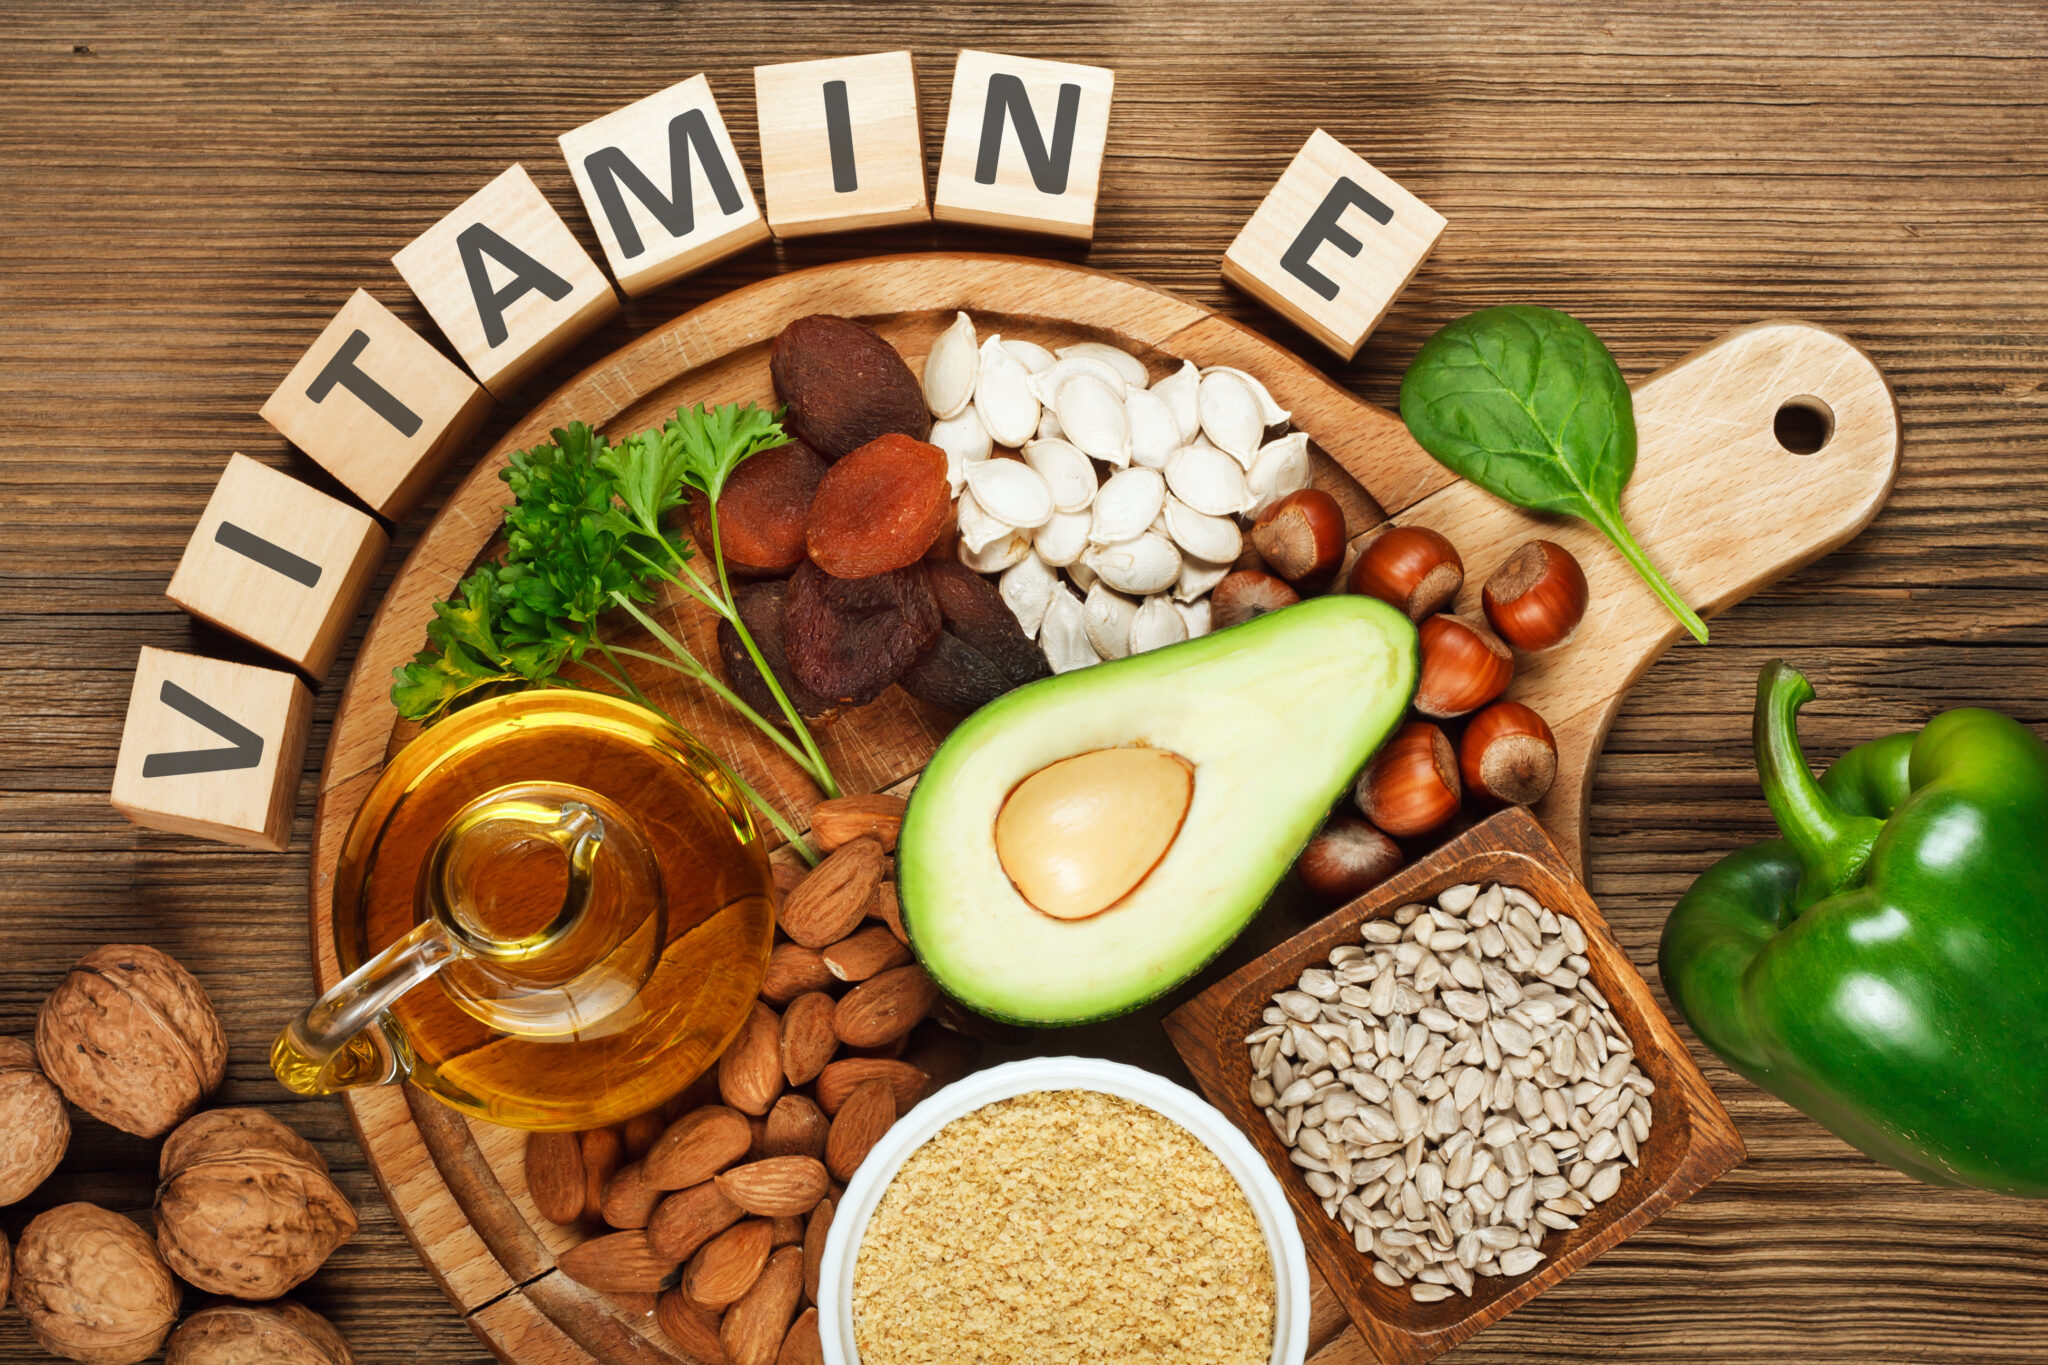 Vitamine als Nahrungsergänzung können für Sportler sinnvoll sein. Foto ©airborne77 stock adobe